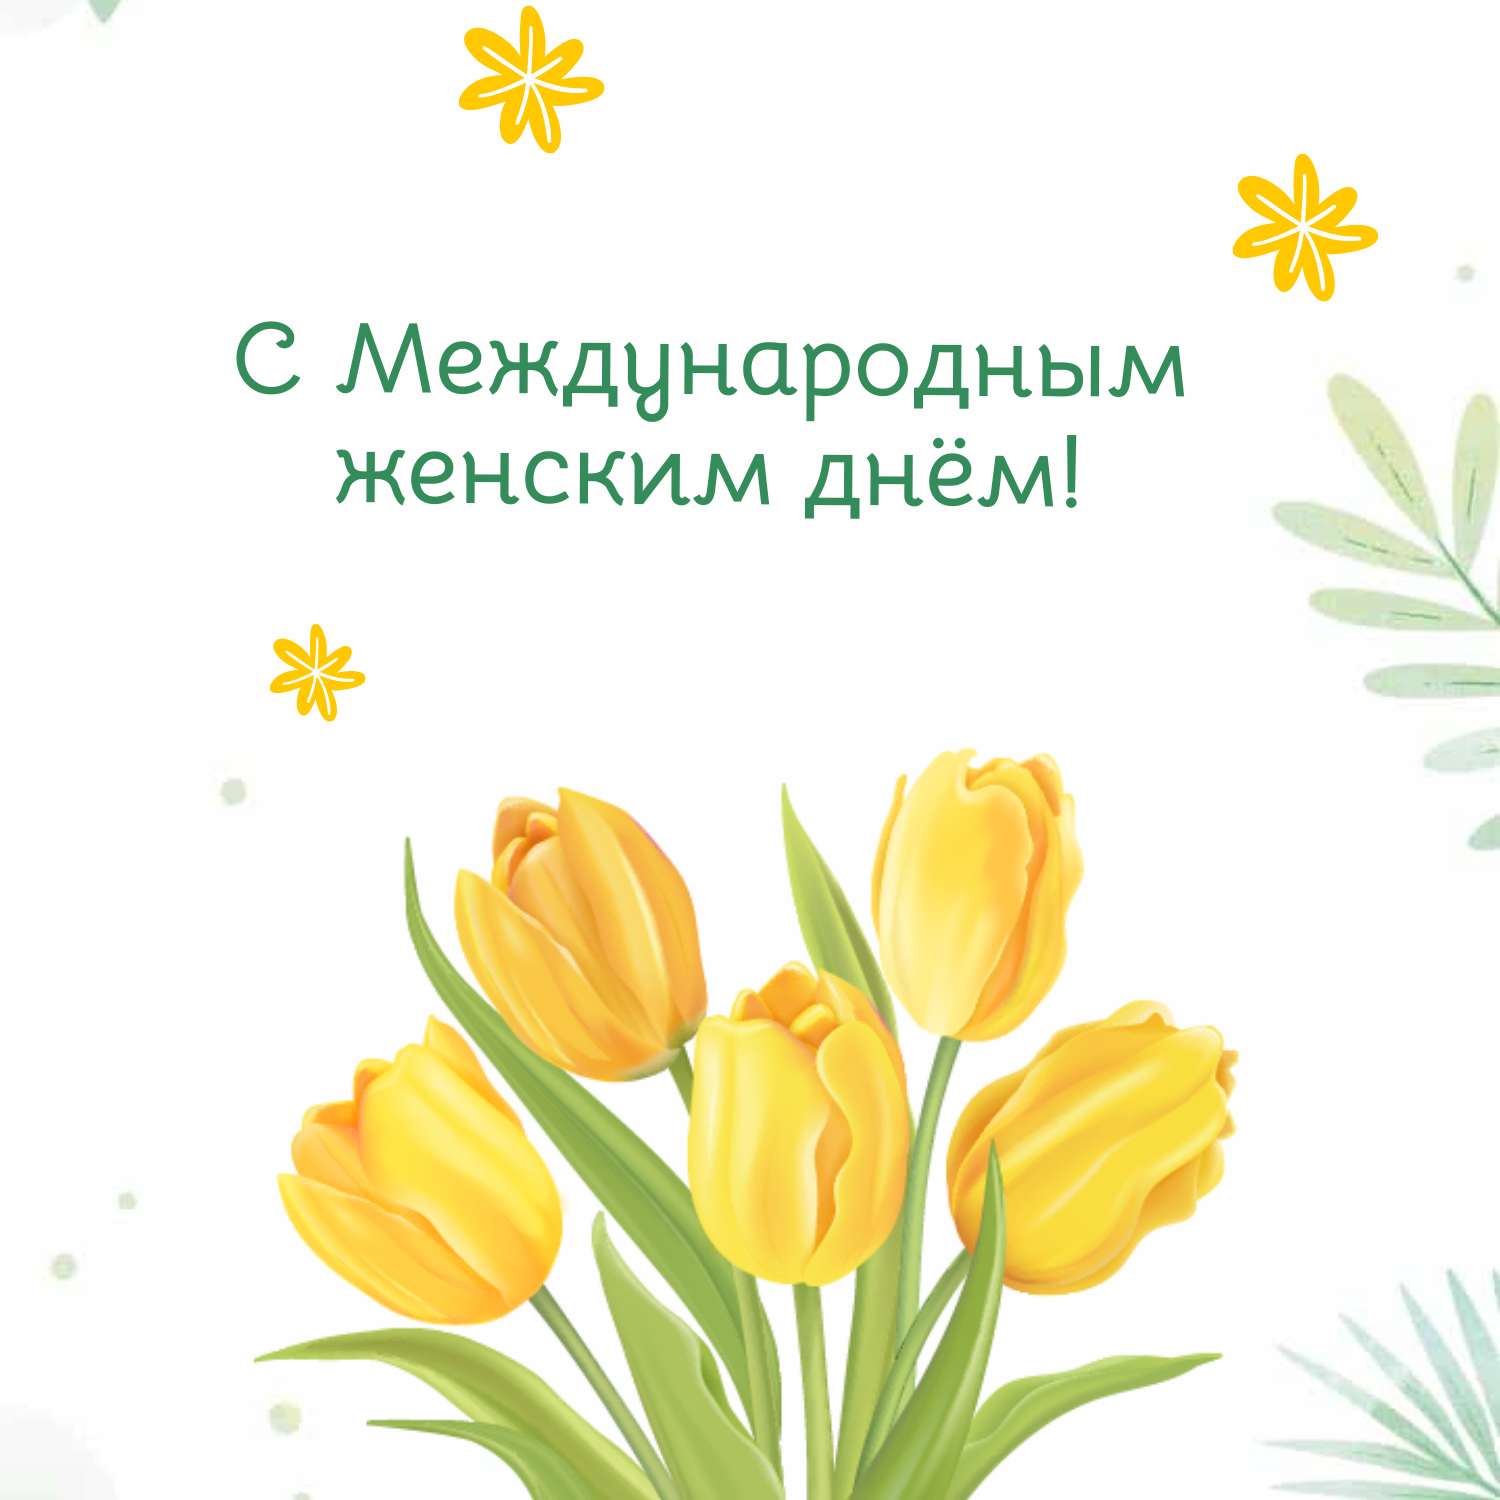 Симпатичный пост для поздравления с весенним праздником 8 марта с акварельными желтыми тюльпанами